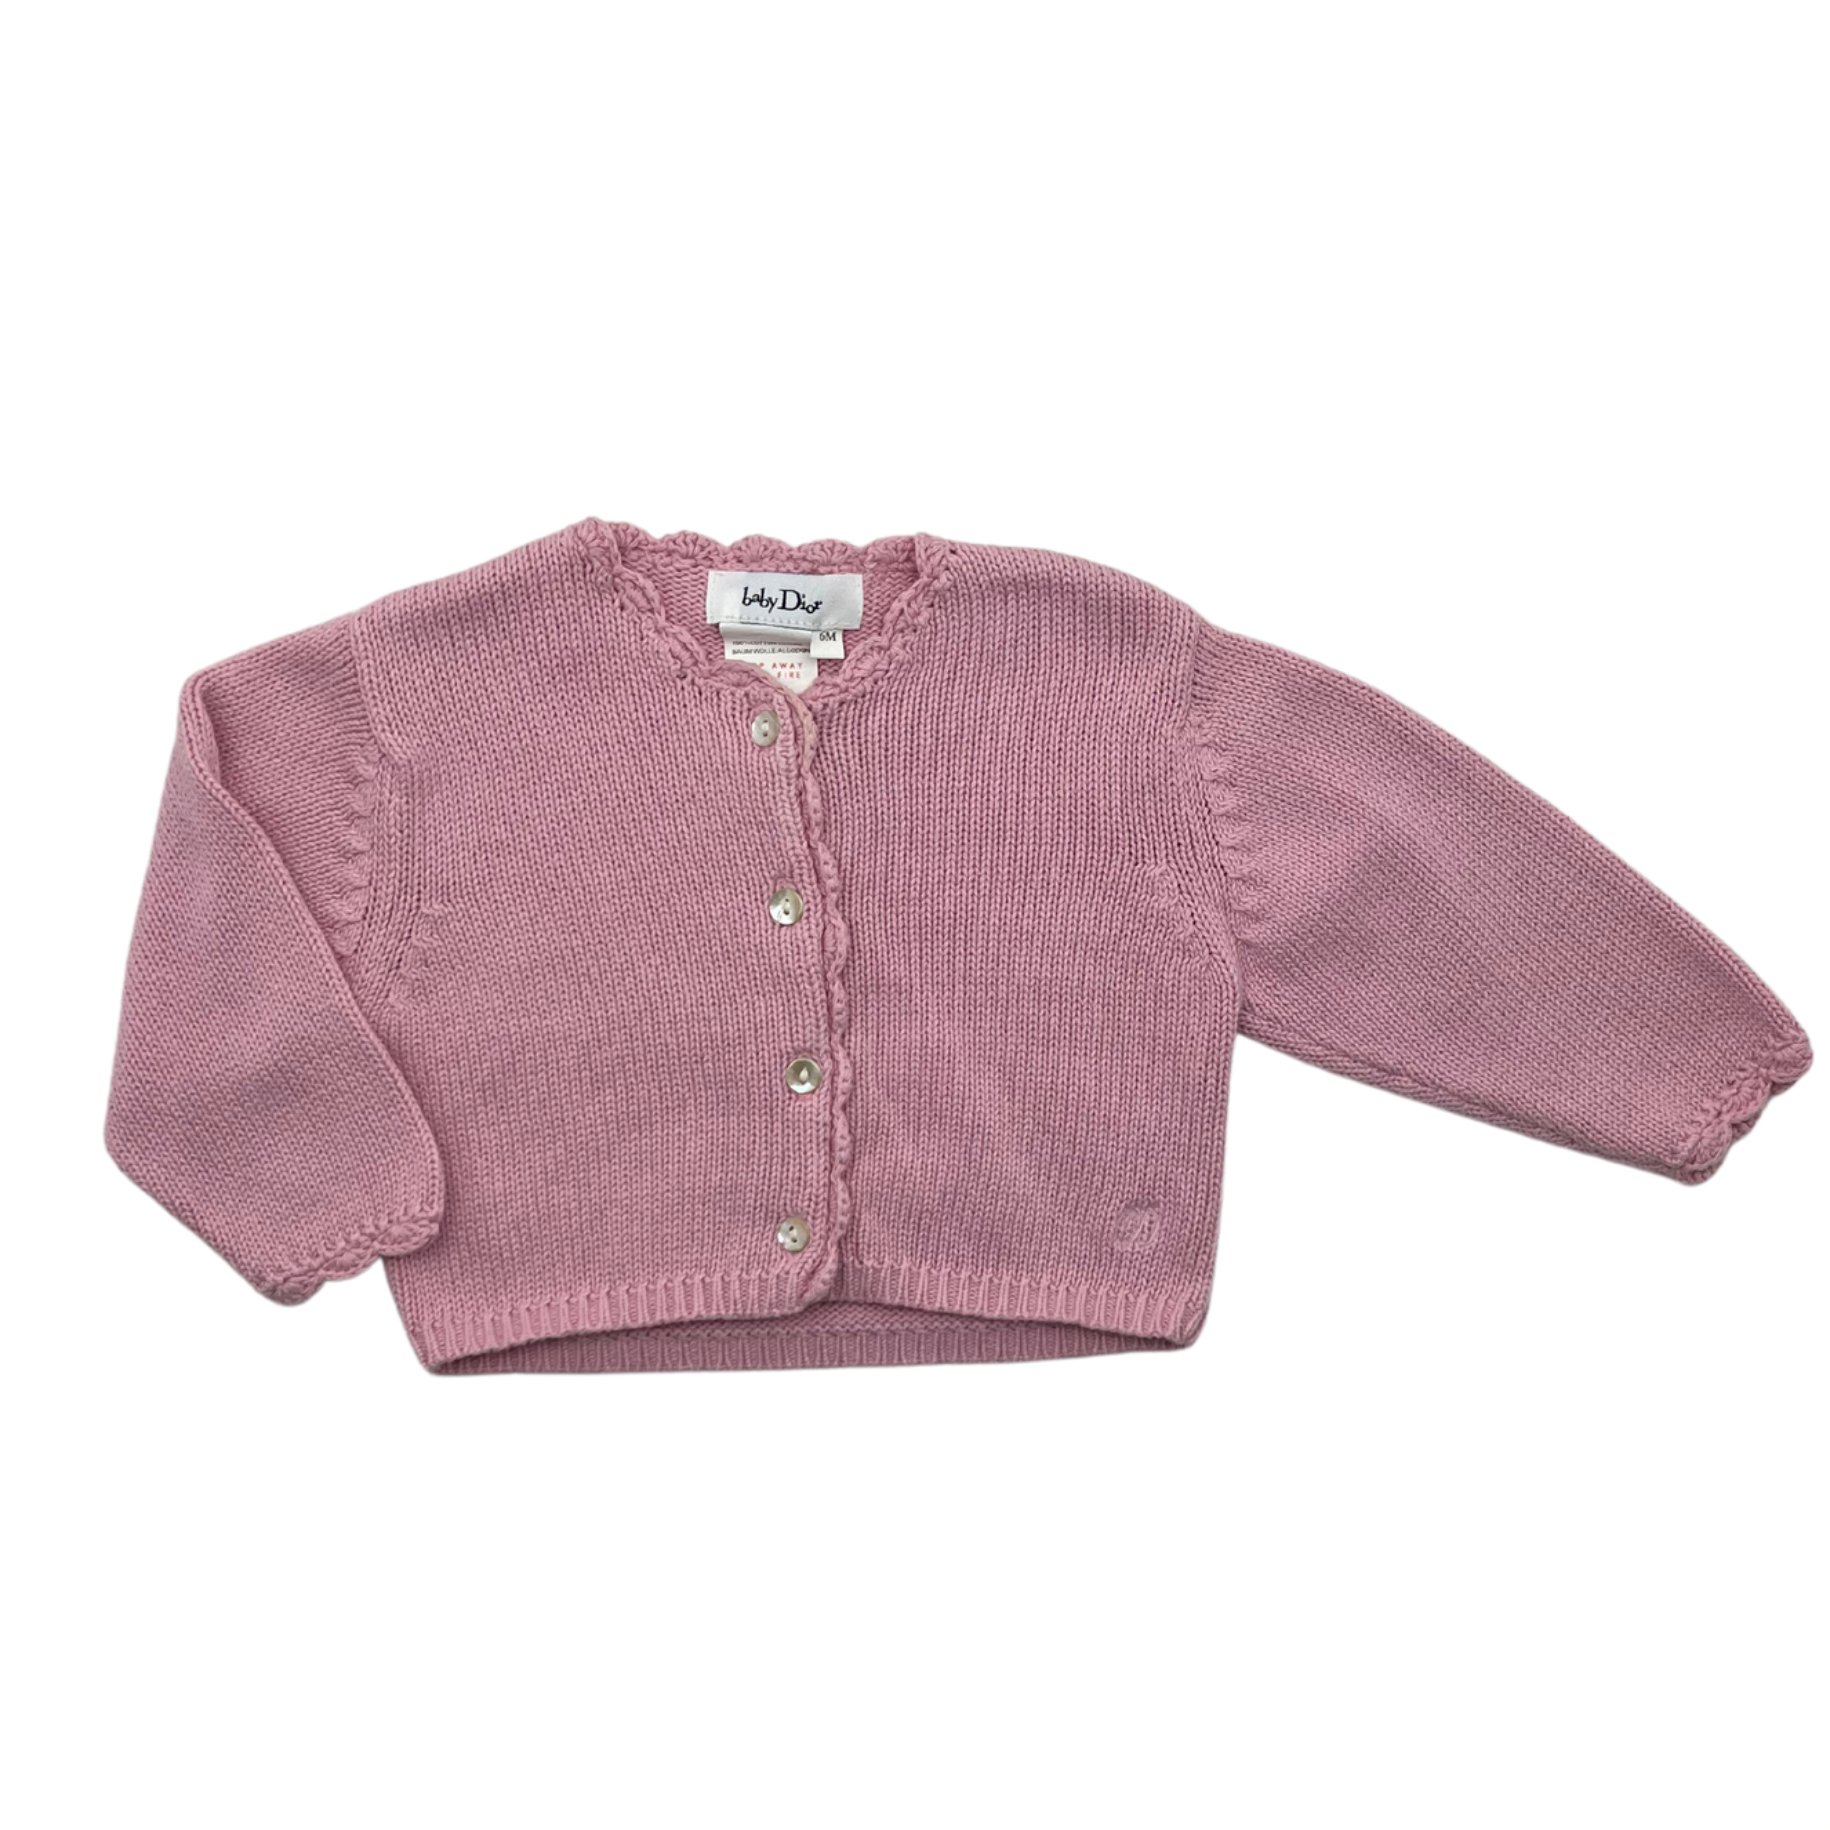 BABY DIOR - Sweater - 6 months